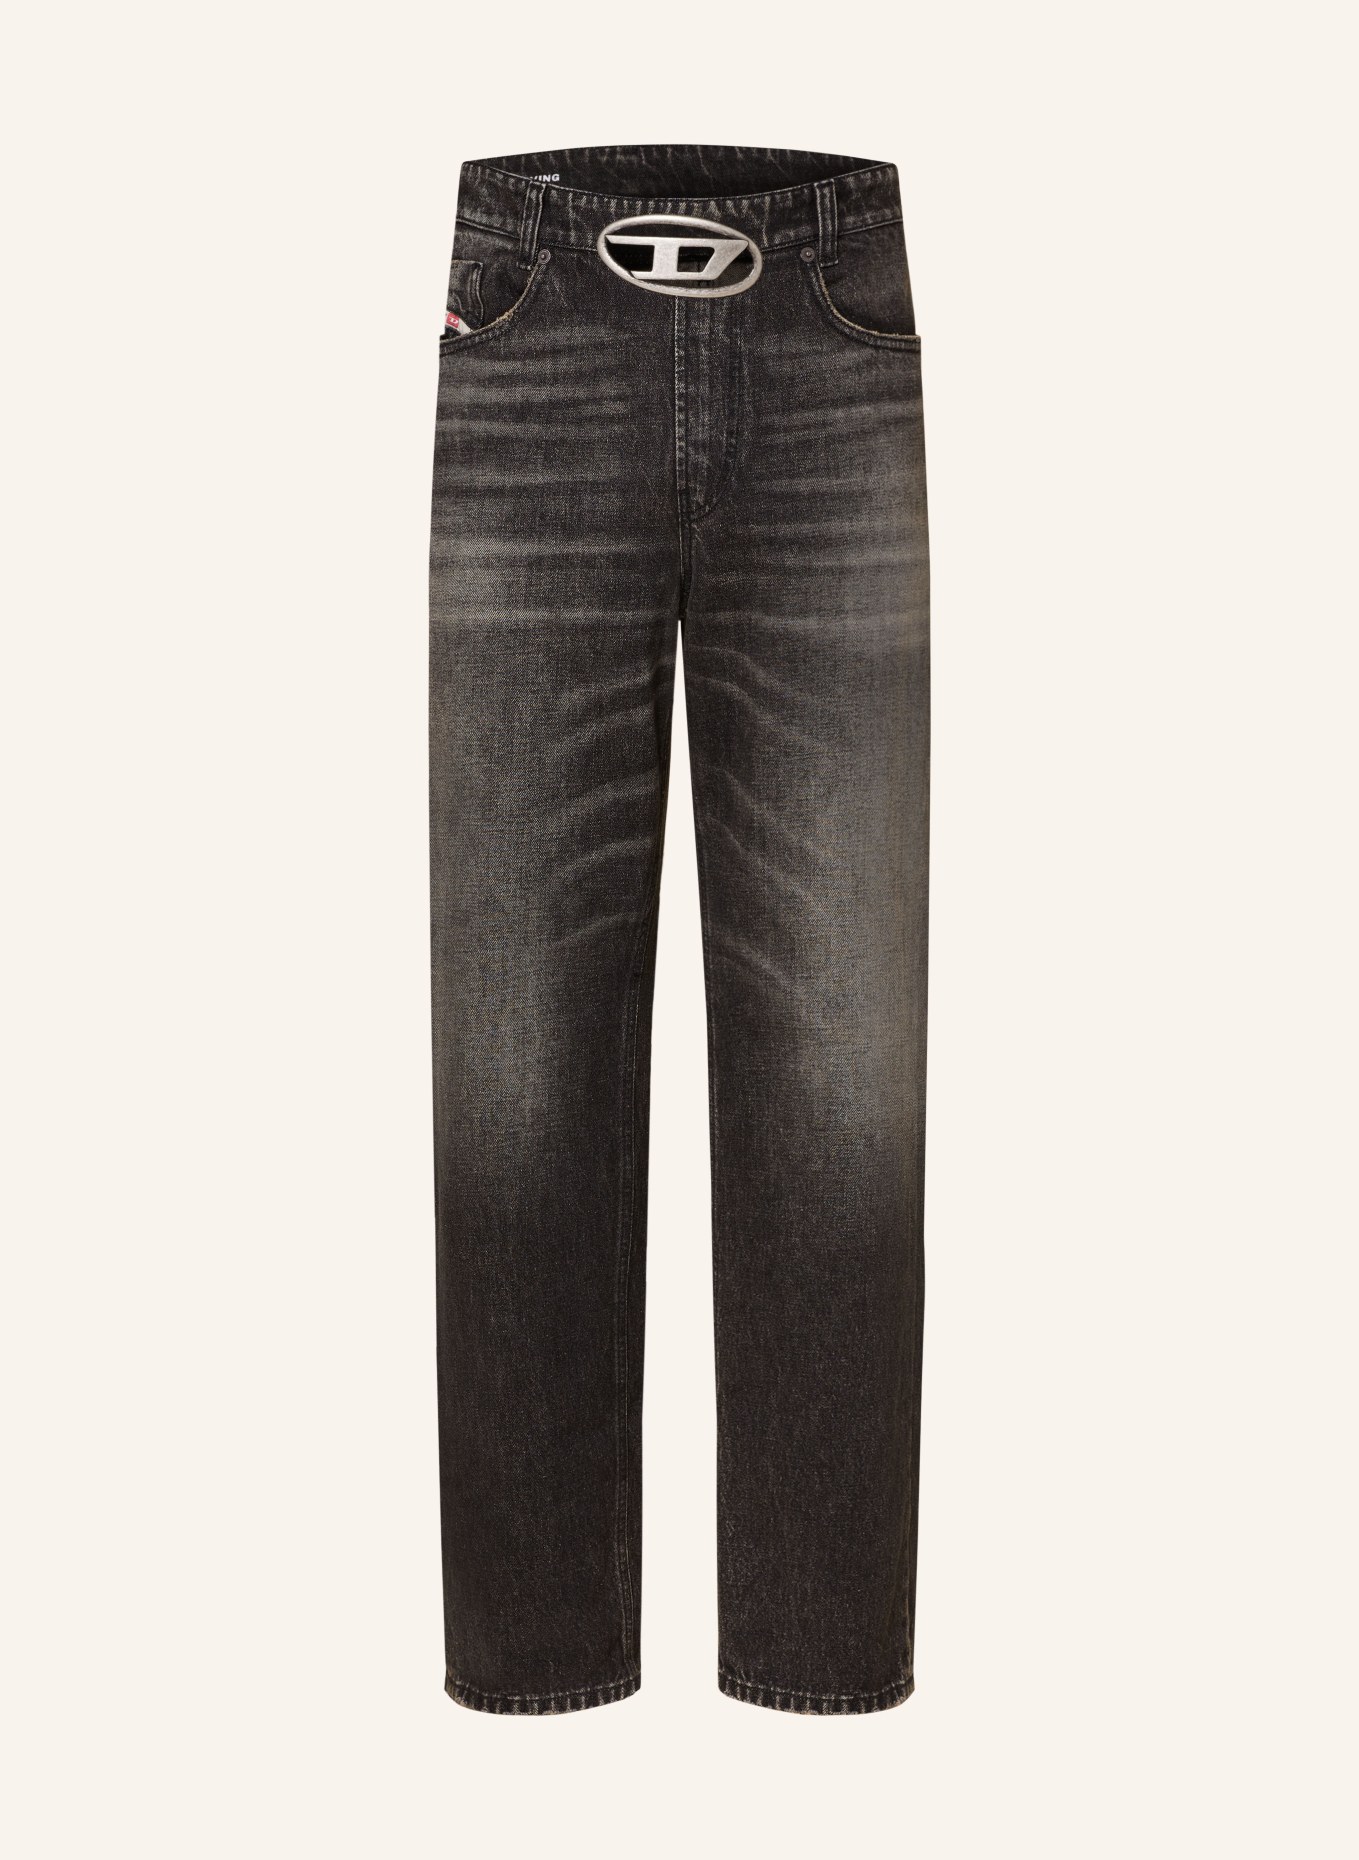 DIESEL Jeans 2010 D-MACS-S2 Loose Fit, Farbe: 02 (Bild 1)